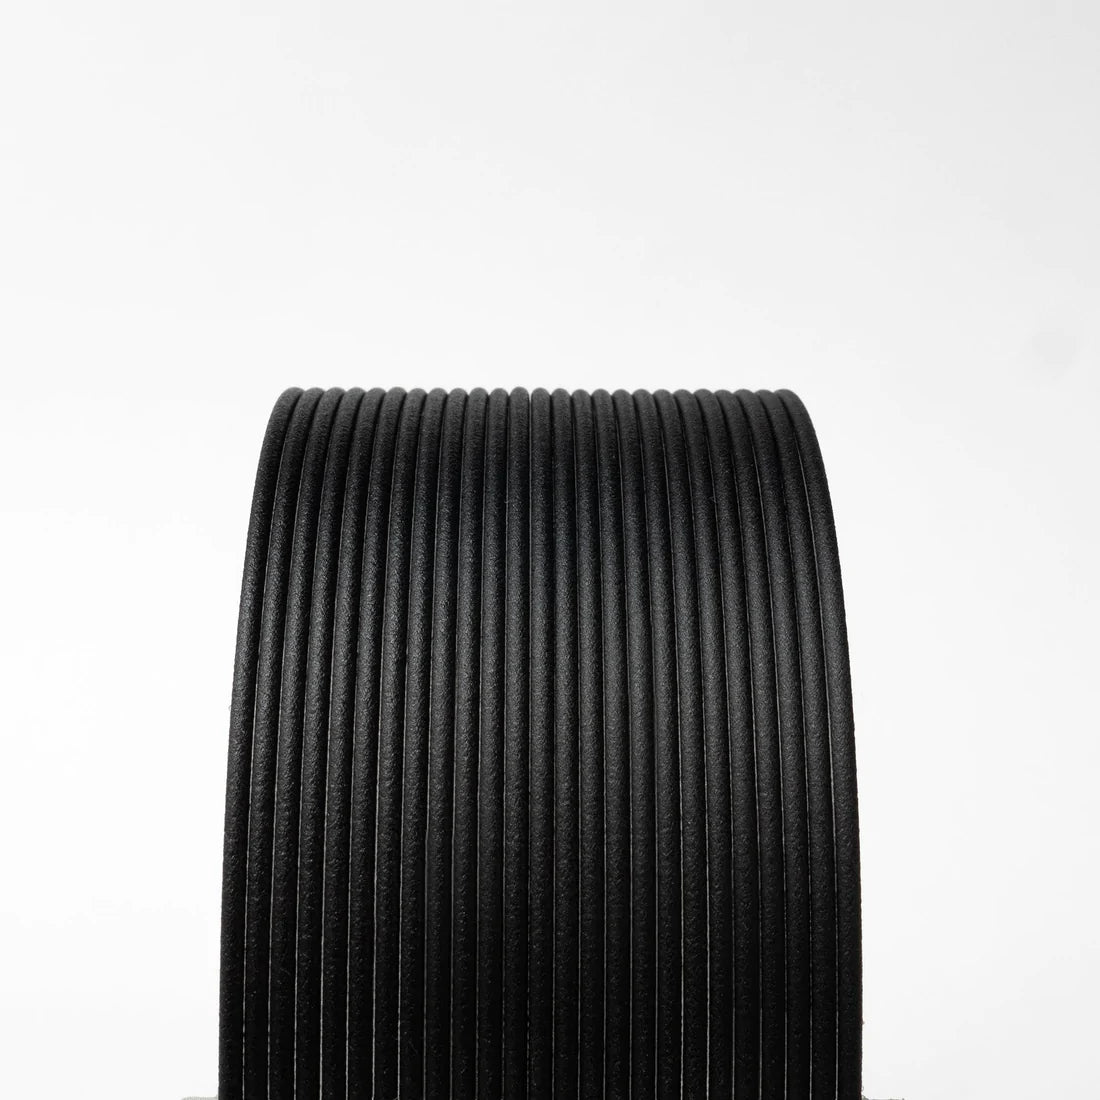 Protopasta Carbon Fiber PETG (75% recycled) - 1.75mm (1kg)